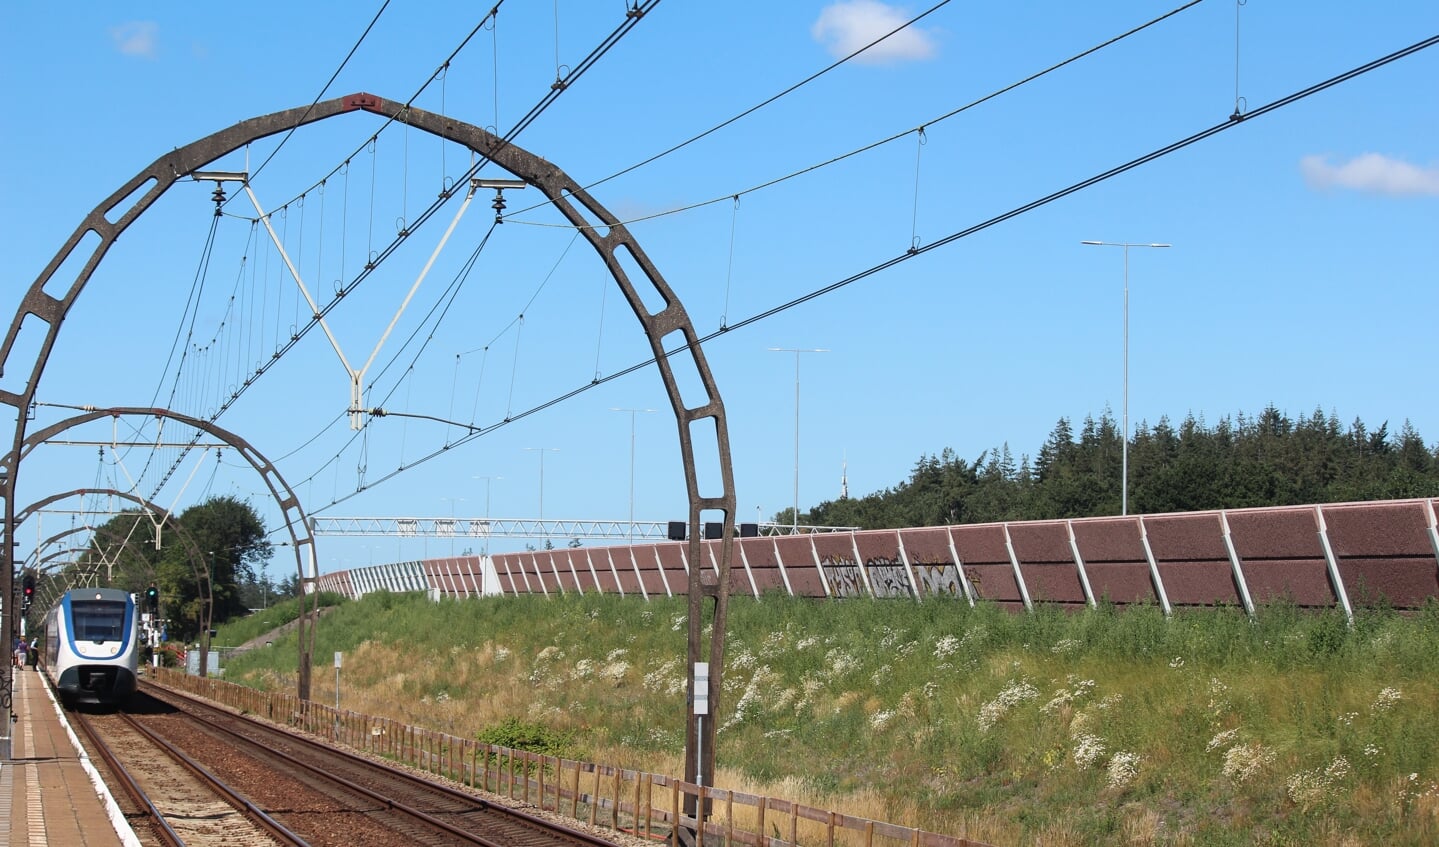 Vanaf het perron in Hollandsche Rading zijn de hoge lichtmasten (in het midden van de A27) die ruim boven het geluidsscherm, de trein en de unieke spoorbogen uitsteken, goed te zien.   